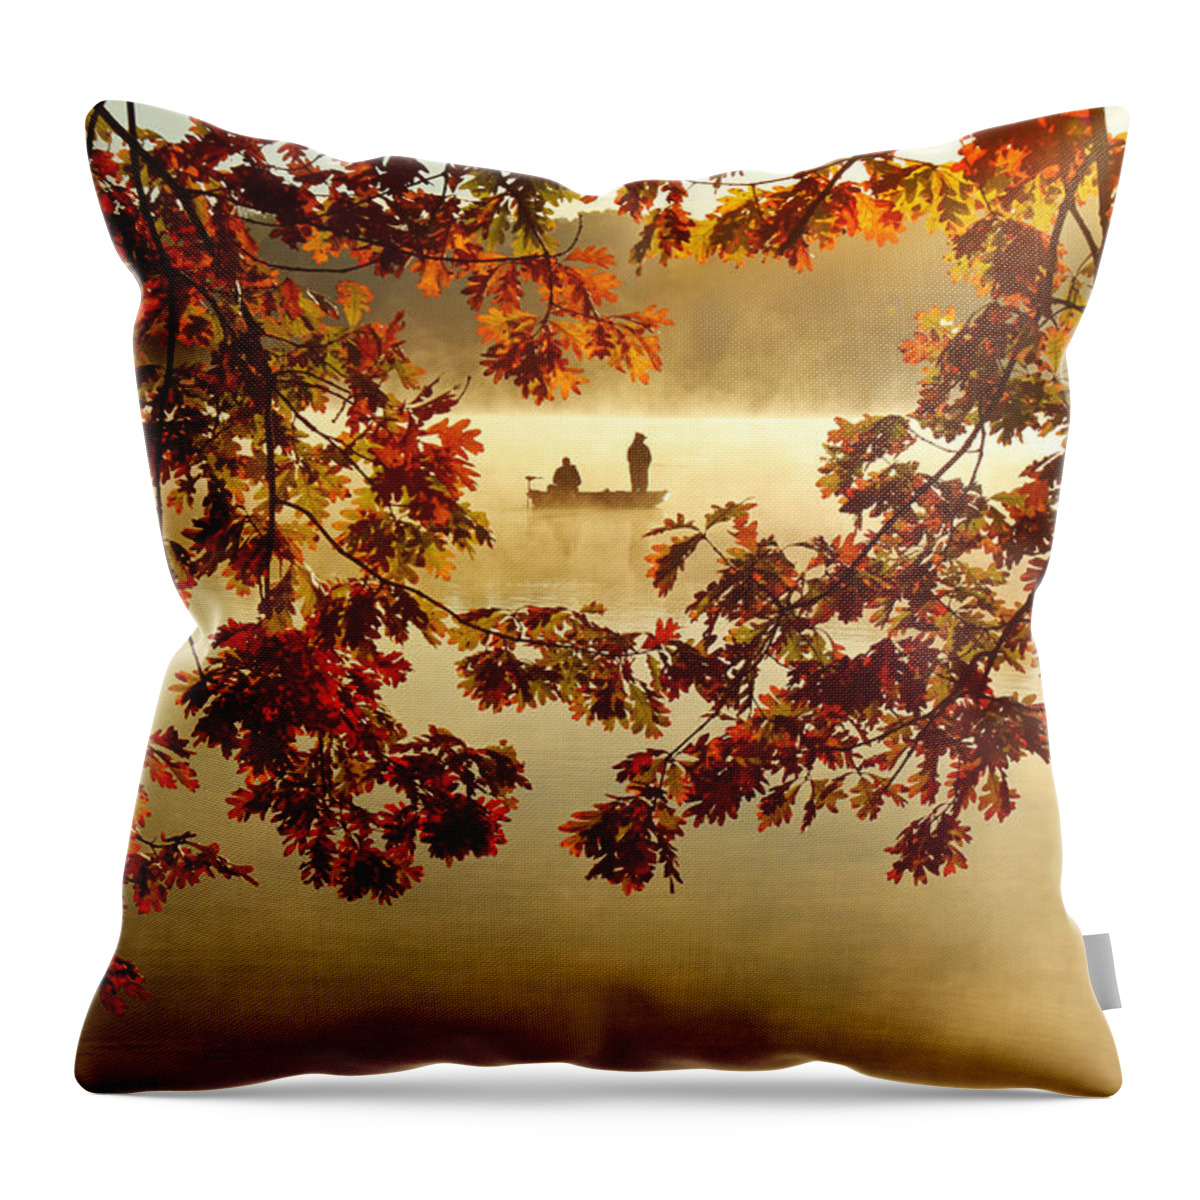 Autumn Throw Pillow featuring the photograph Autumn Nostalgia by Rob Blair